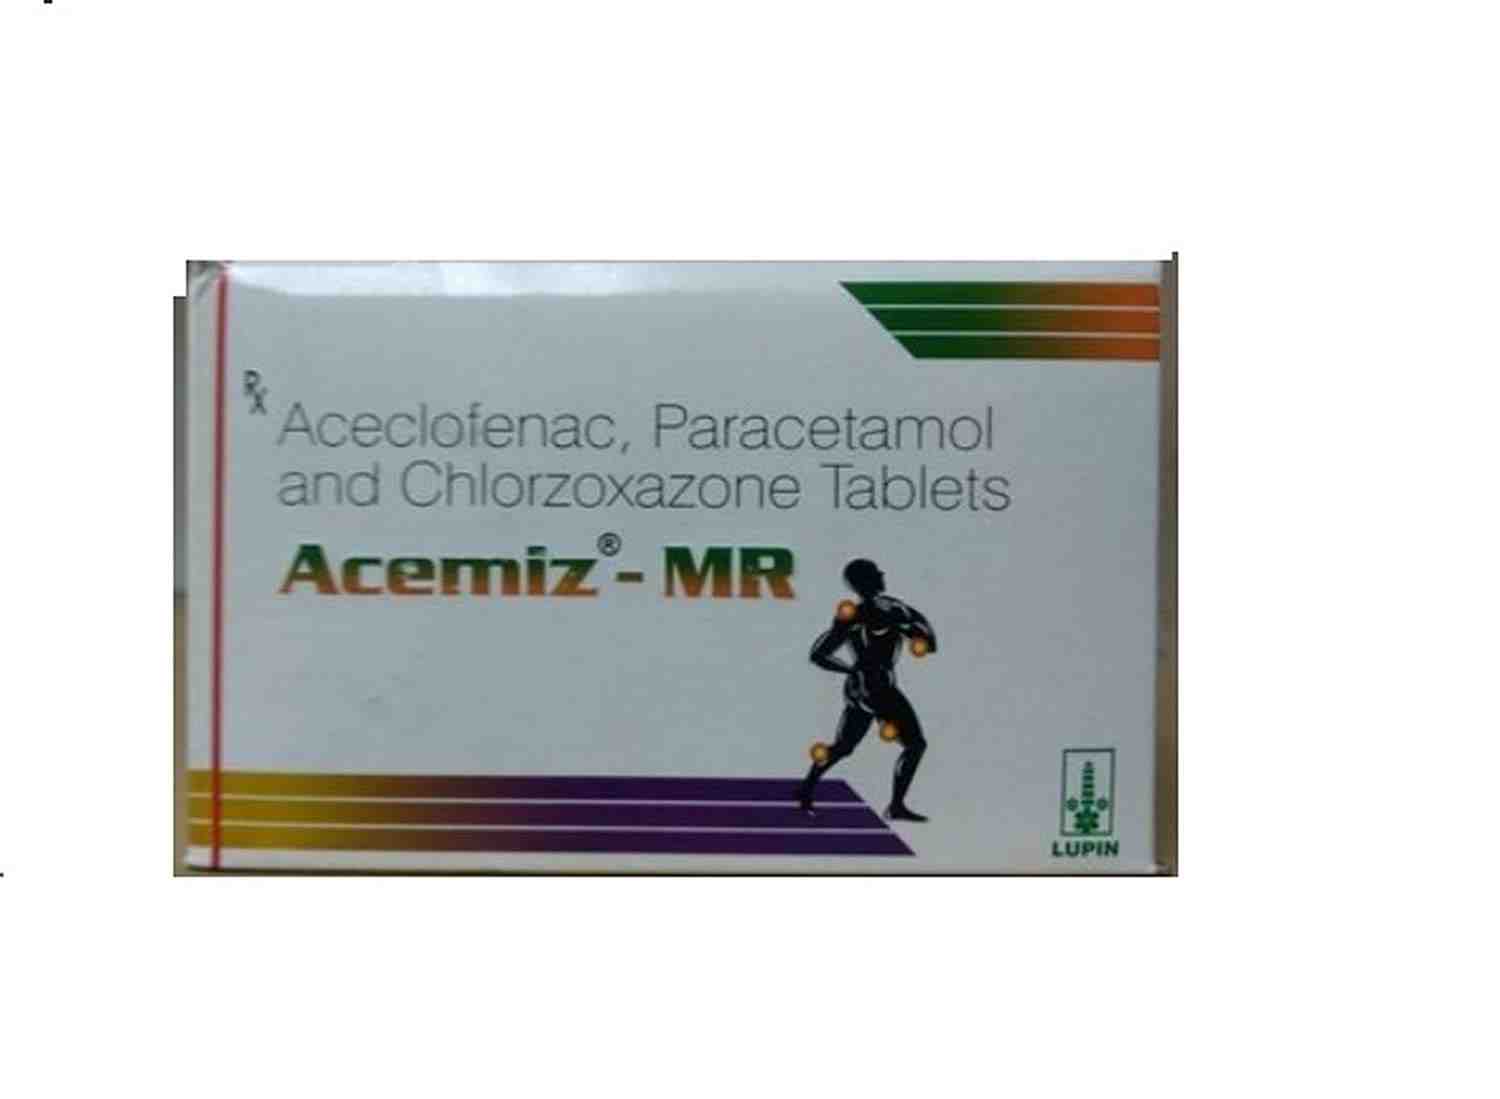 Buy Acemiz Mr Tablet At Best Price In Nepal